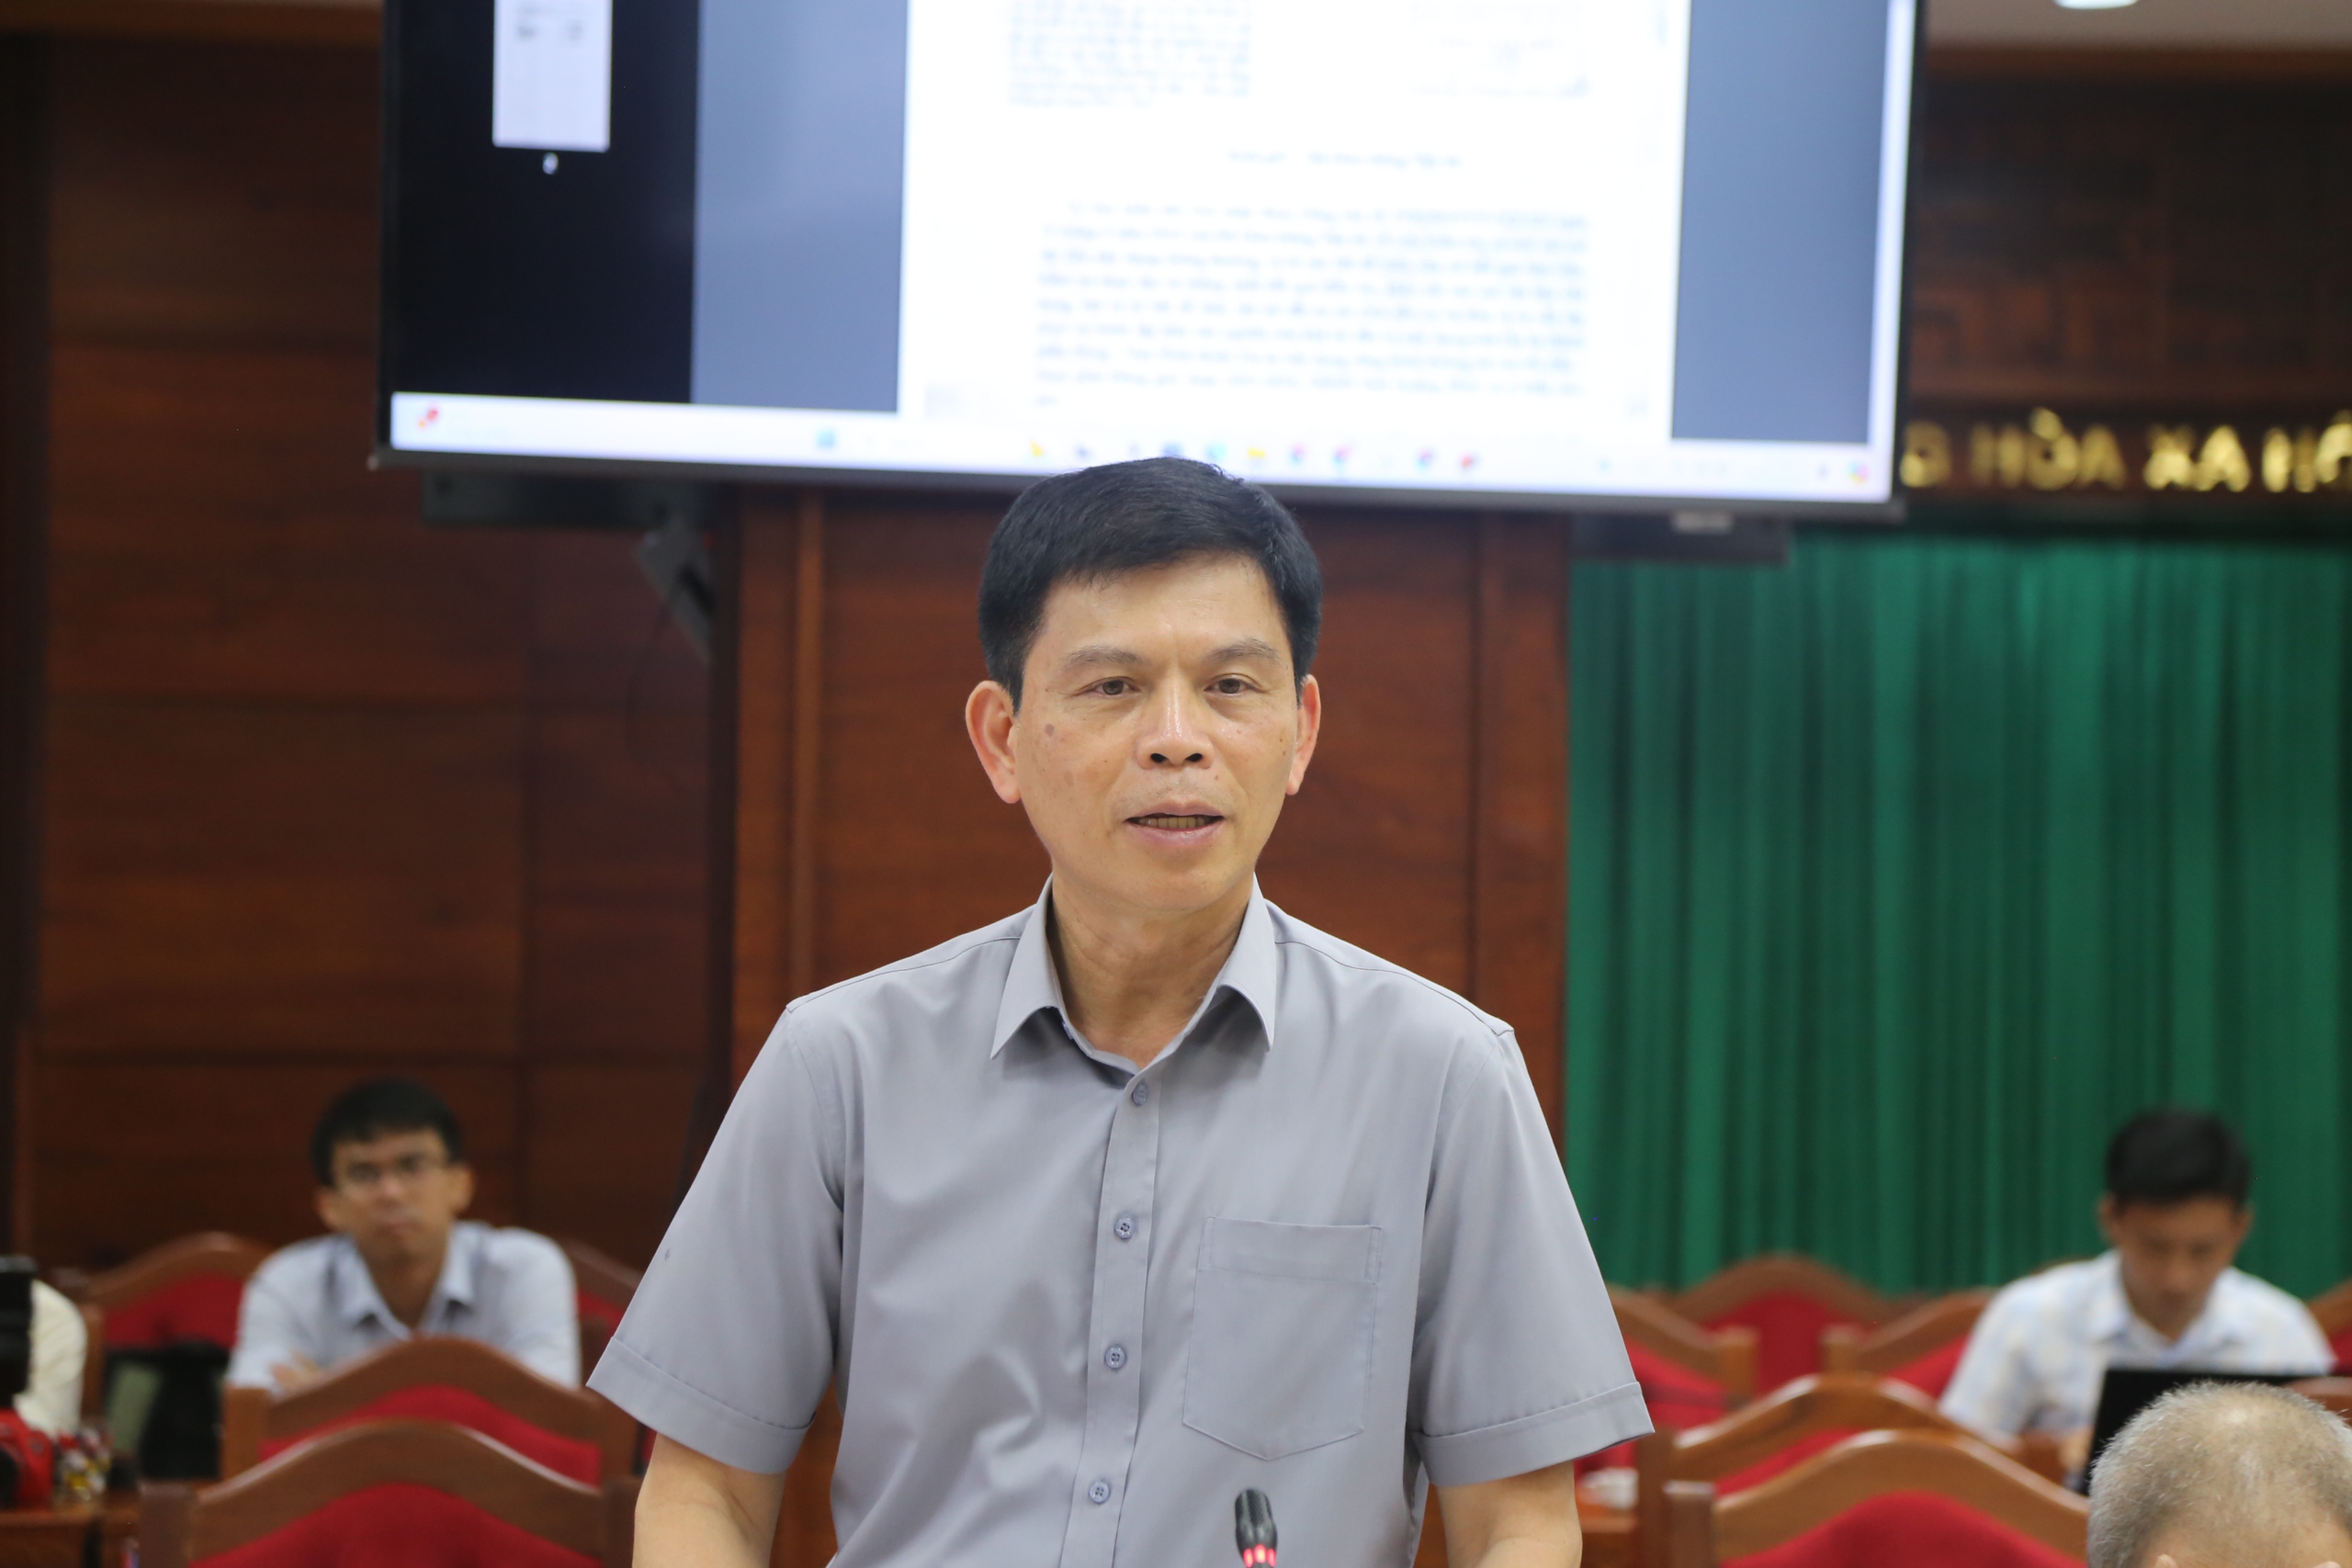 Chủ tịch Đắk Lắk sốt ruột việc cấp phép bãi đổ thải cao tốc Khánh Hòa - Buôn Ma Thuột - Ảnh 3.